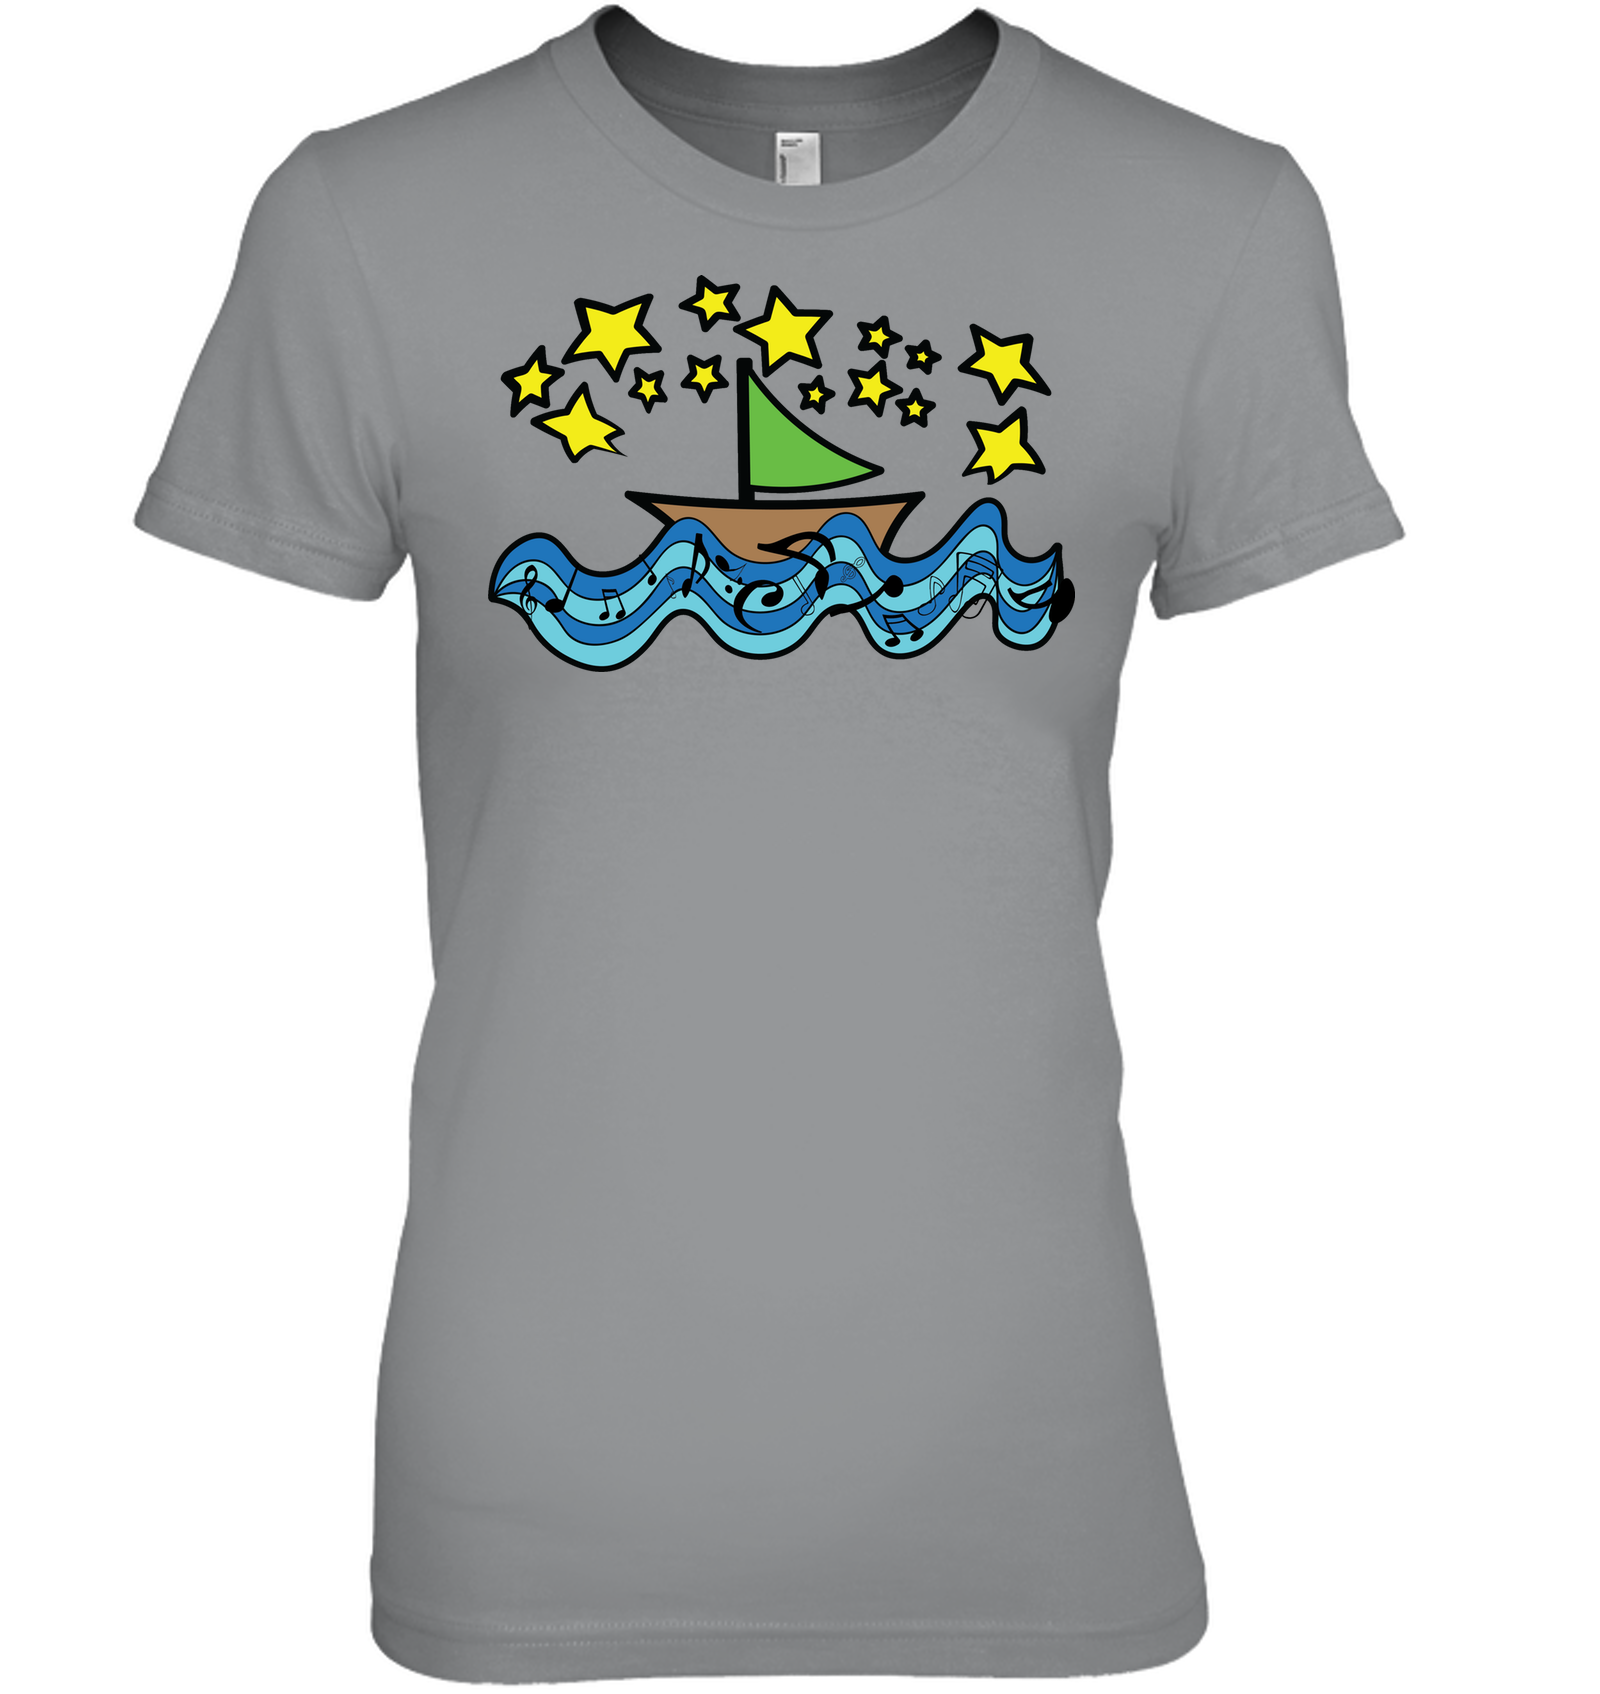 Sailing Under the Stars - Hanes Women's Nano-T® T-shirt